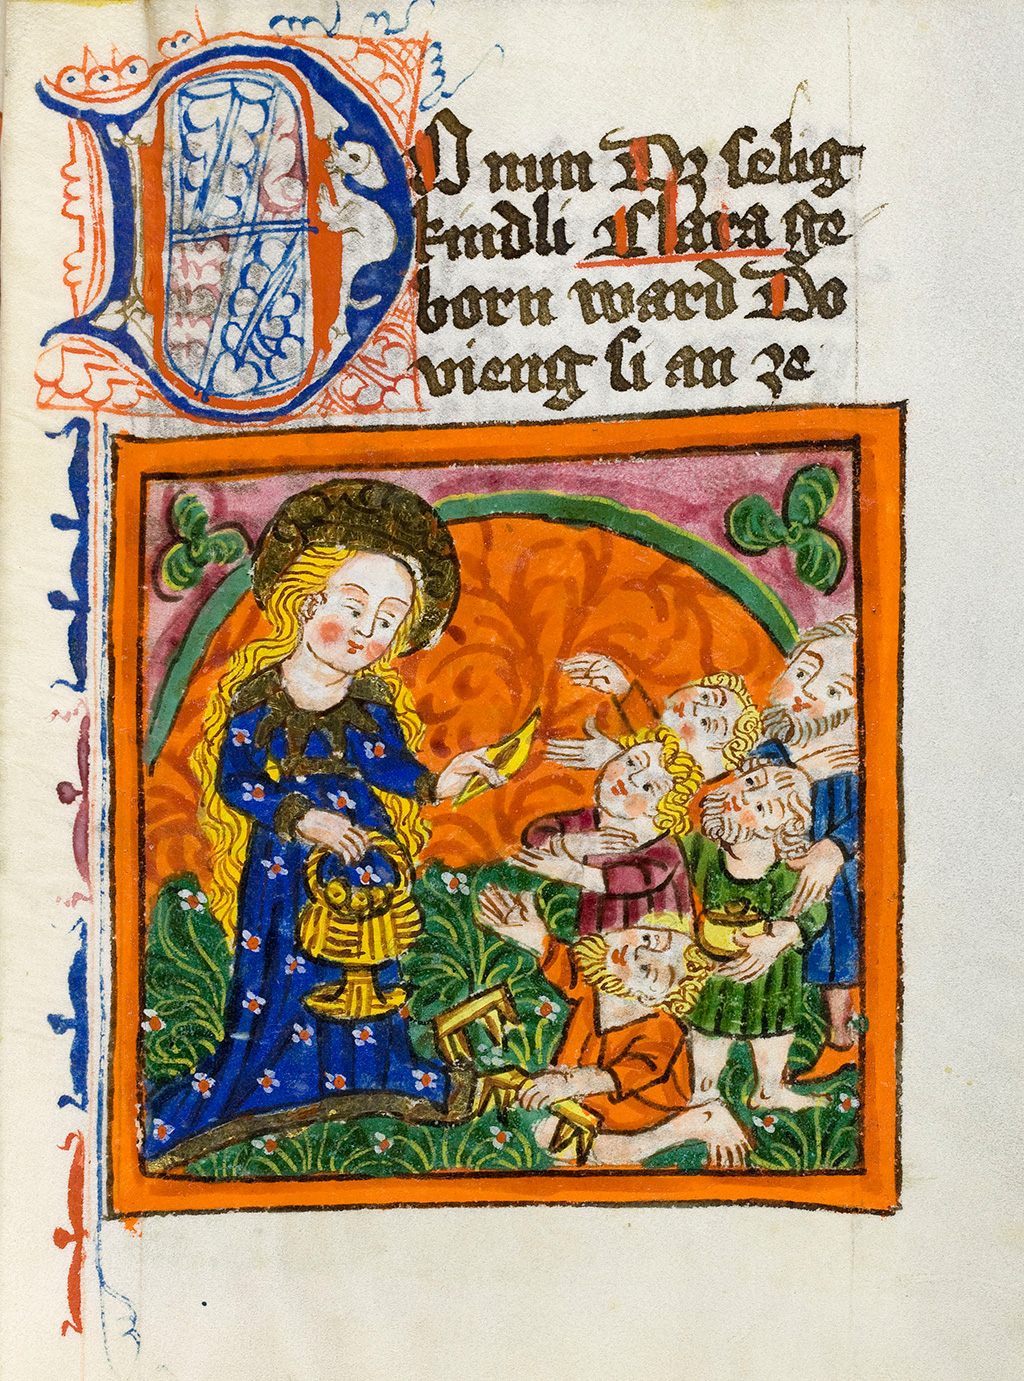 Zu sehen ist eine Szenerie aus dem sogenannten Klarenbuch bei der Maria Essen an Gläubige verteilt.  